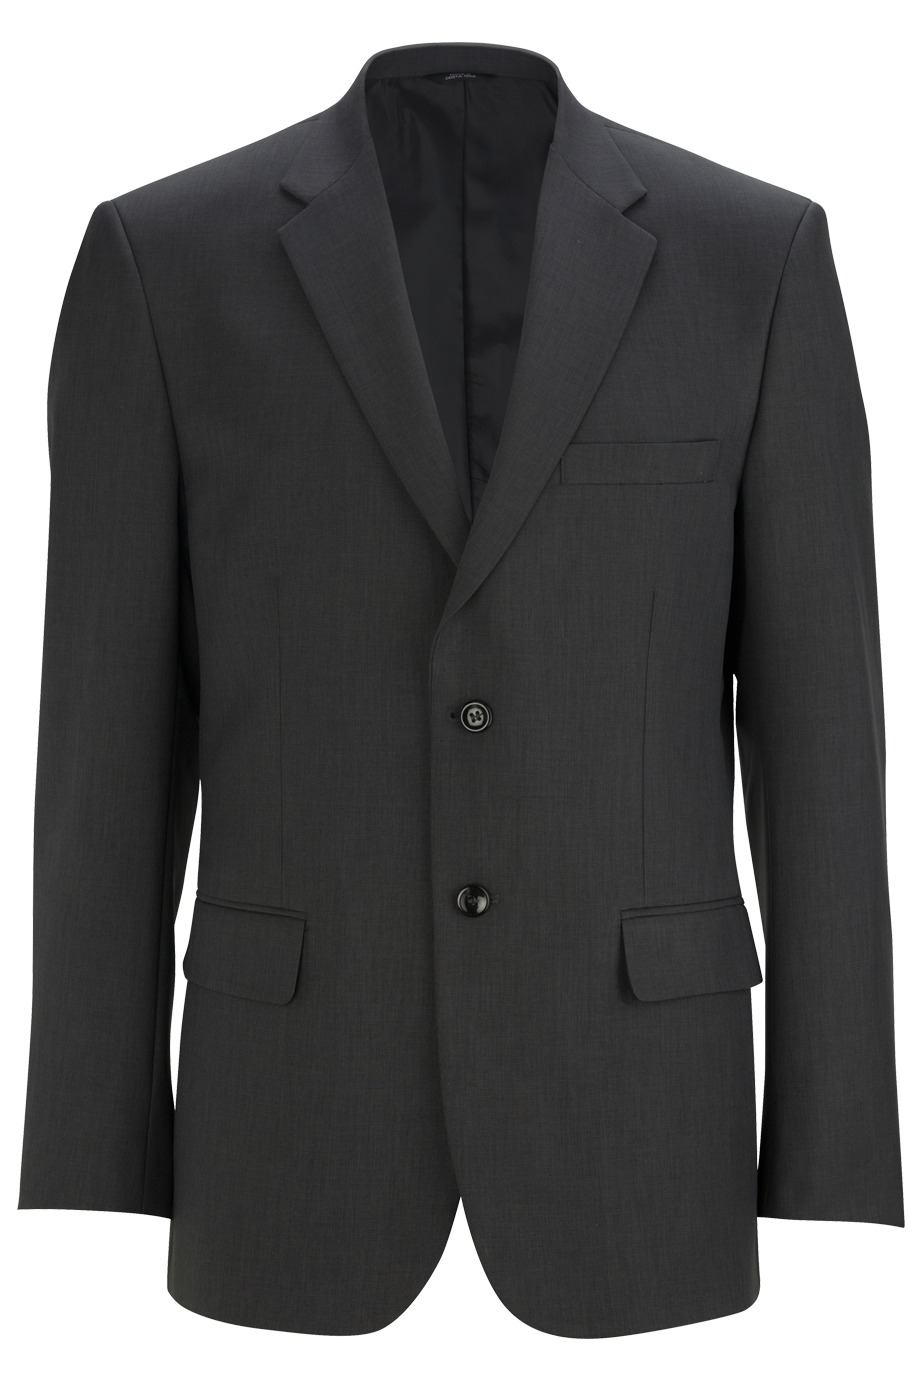 Men's Synergy Washable Suit Coat 3525